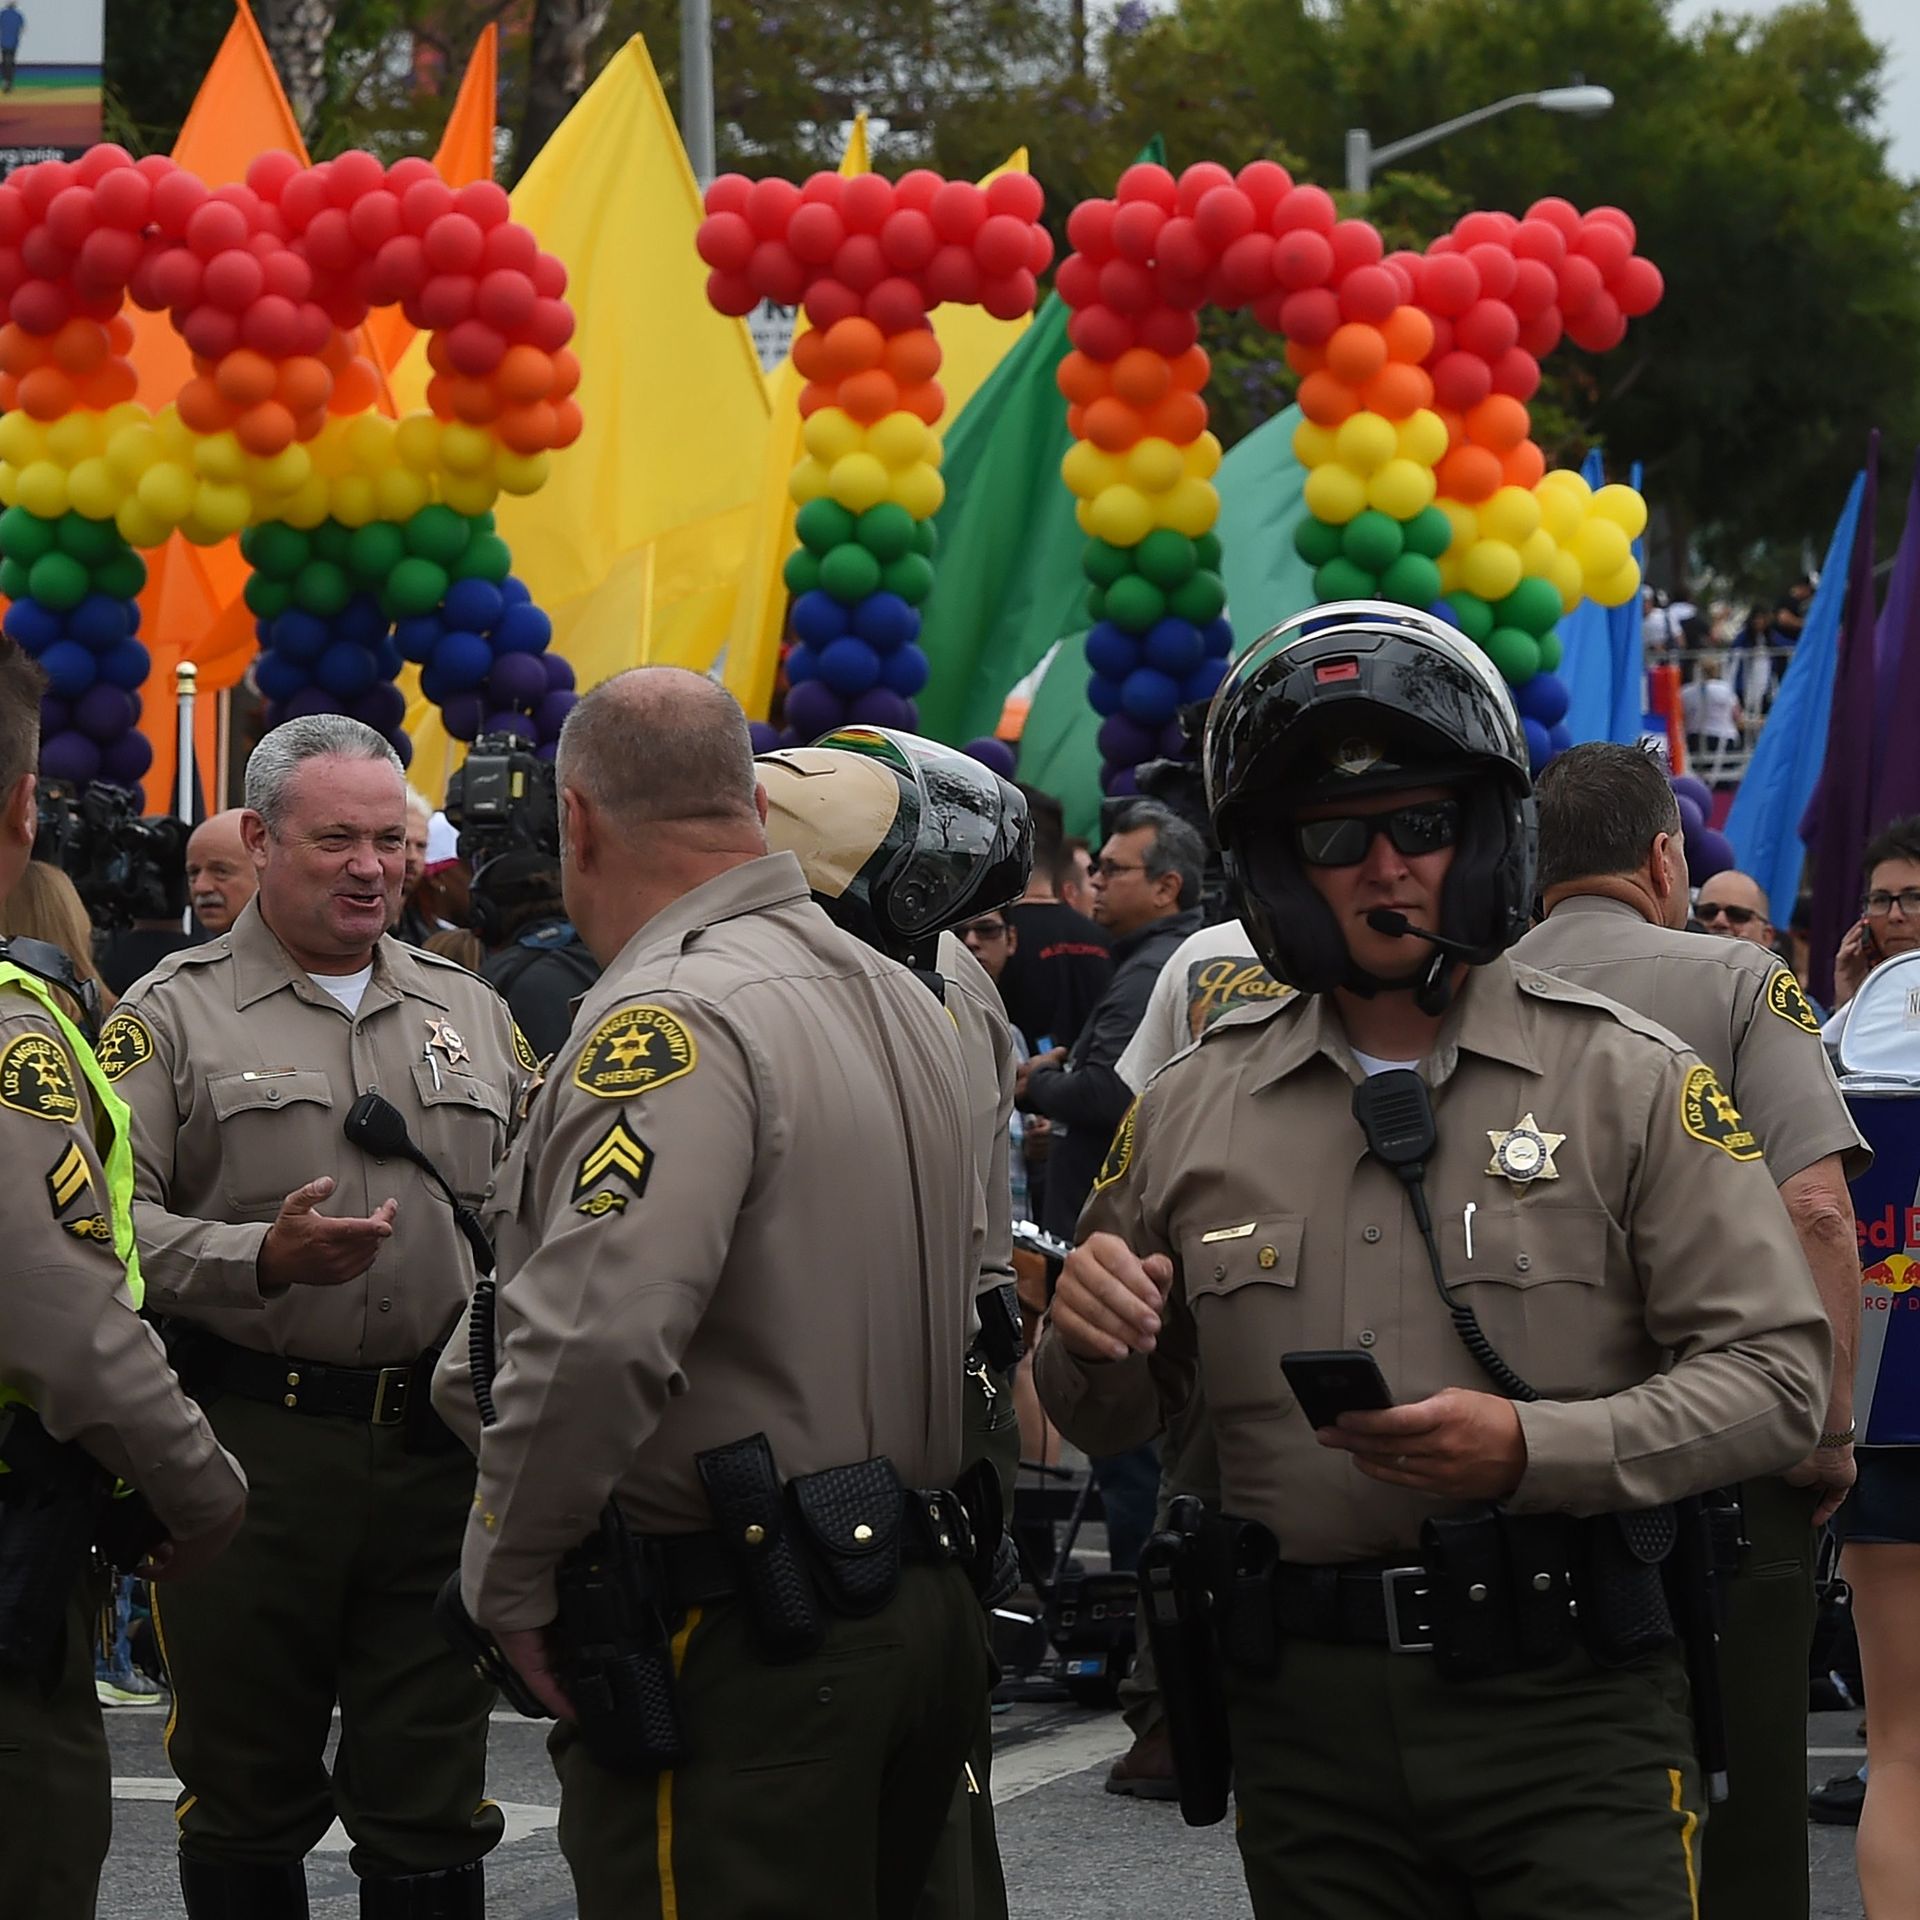 SF, LA set to make history by wearing pride uniforms